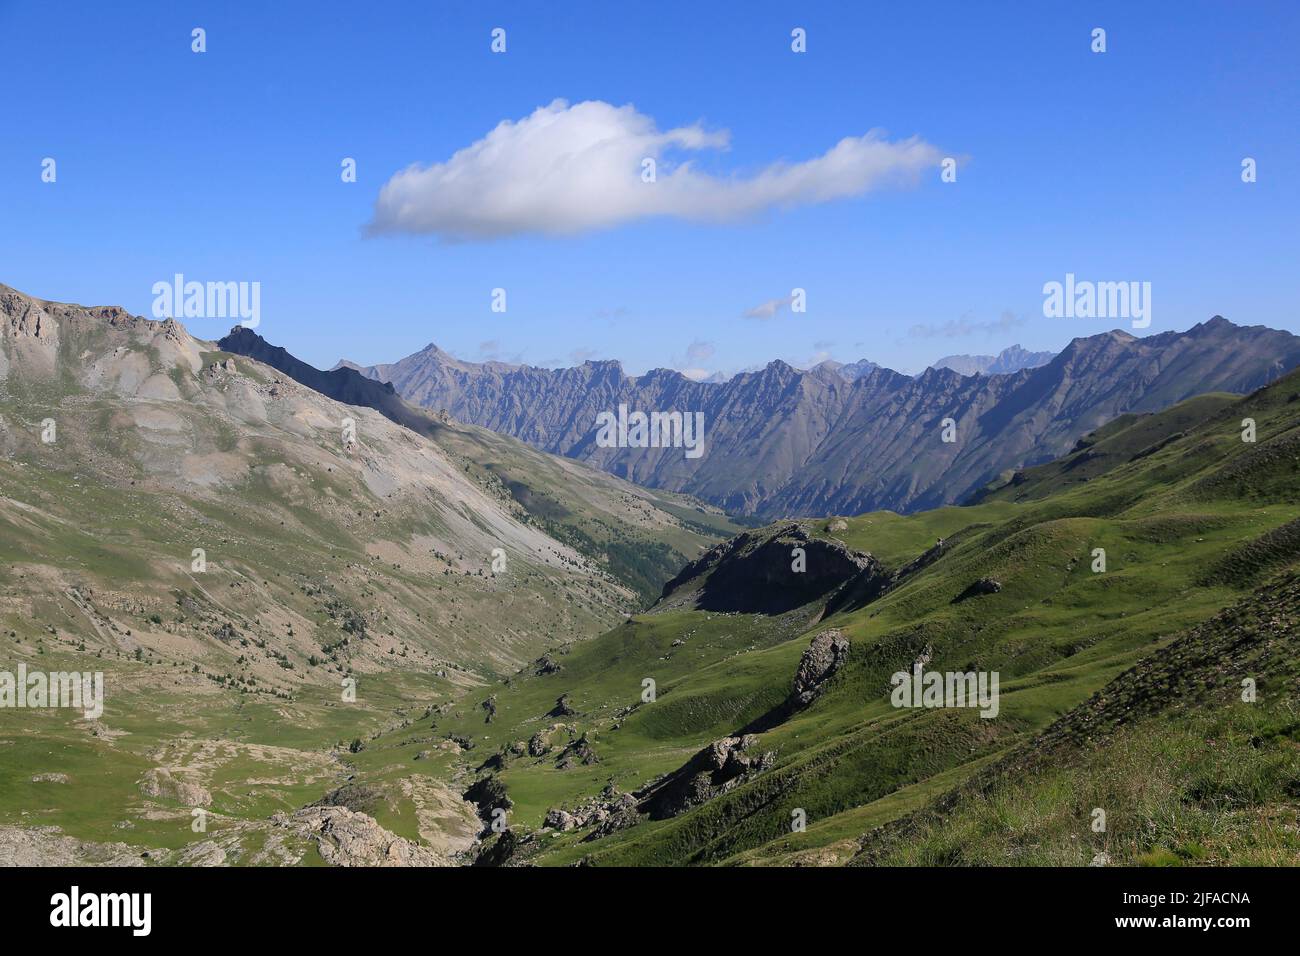 Passo del col de la Bonette, vista dalla rampa sud della catena montuosa al confine tra Francia e Italia, la strada più alta d'Europa Foto Stock